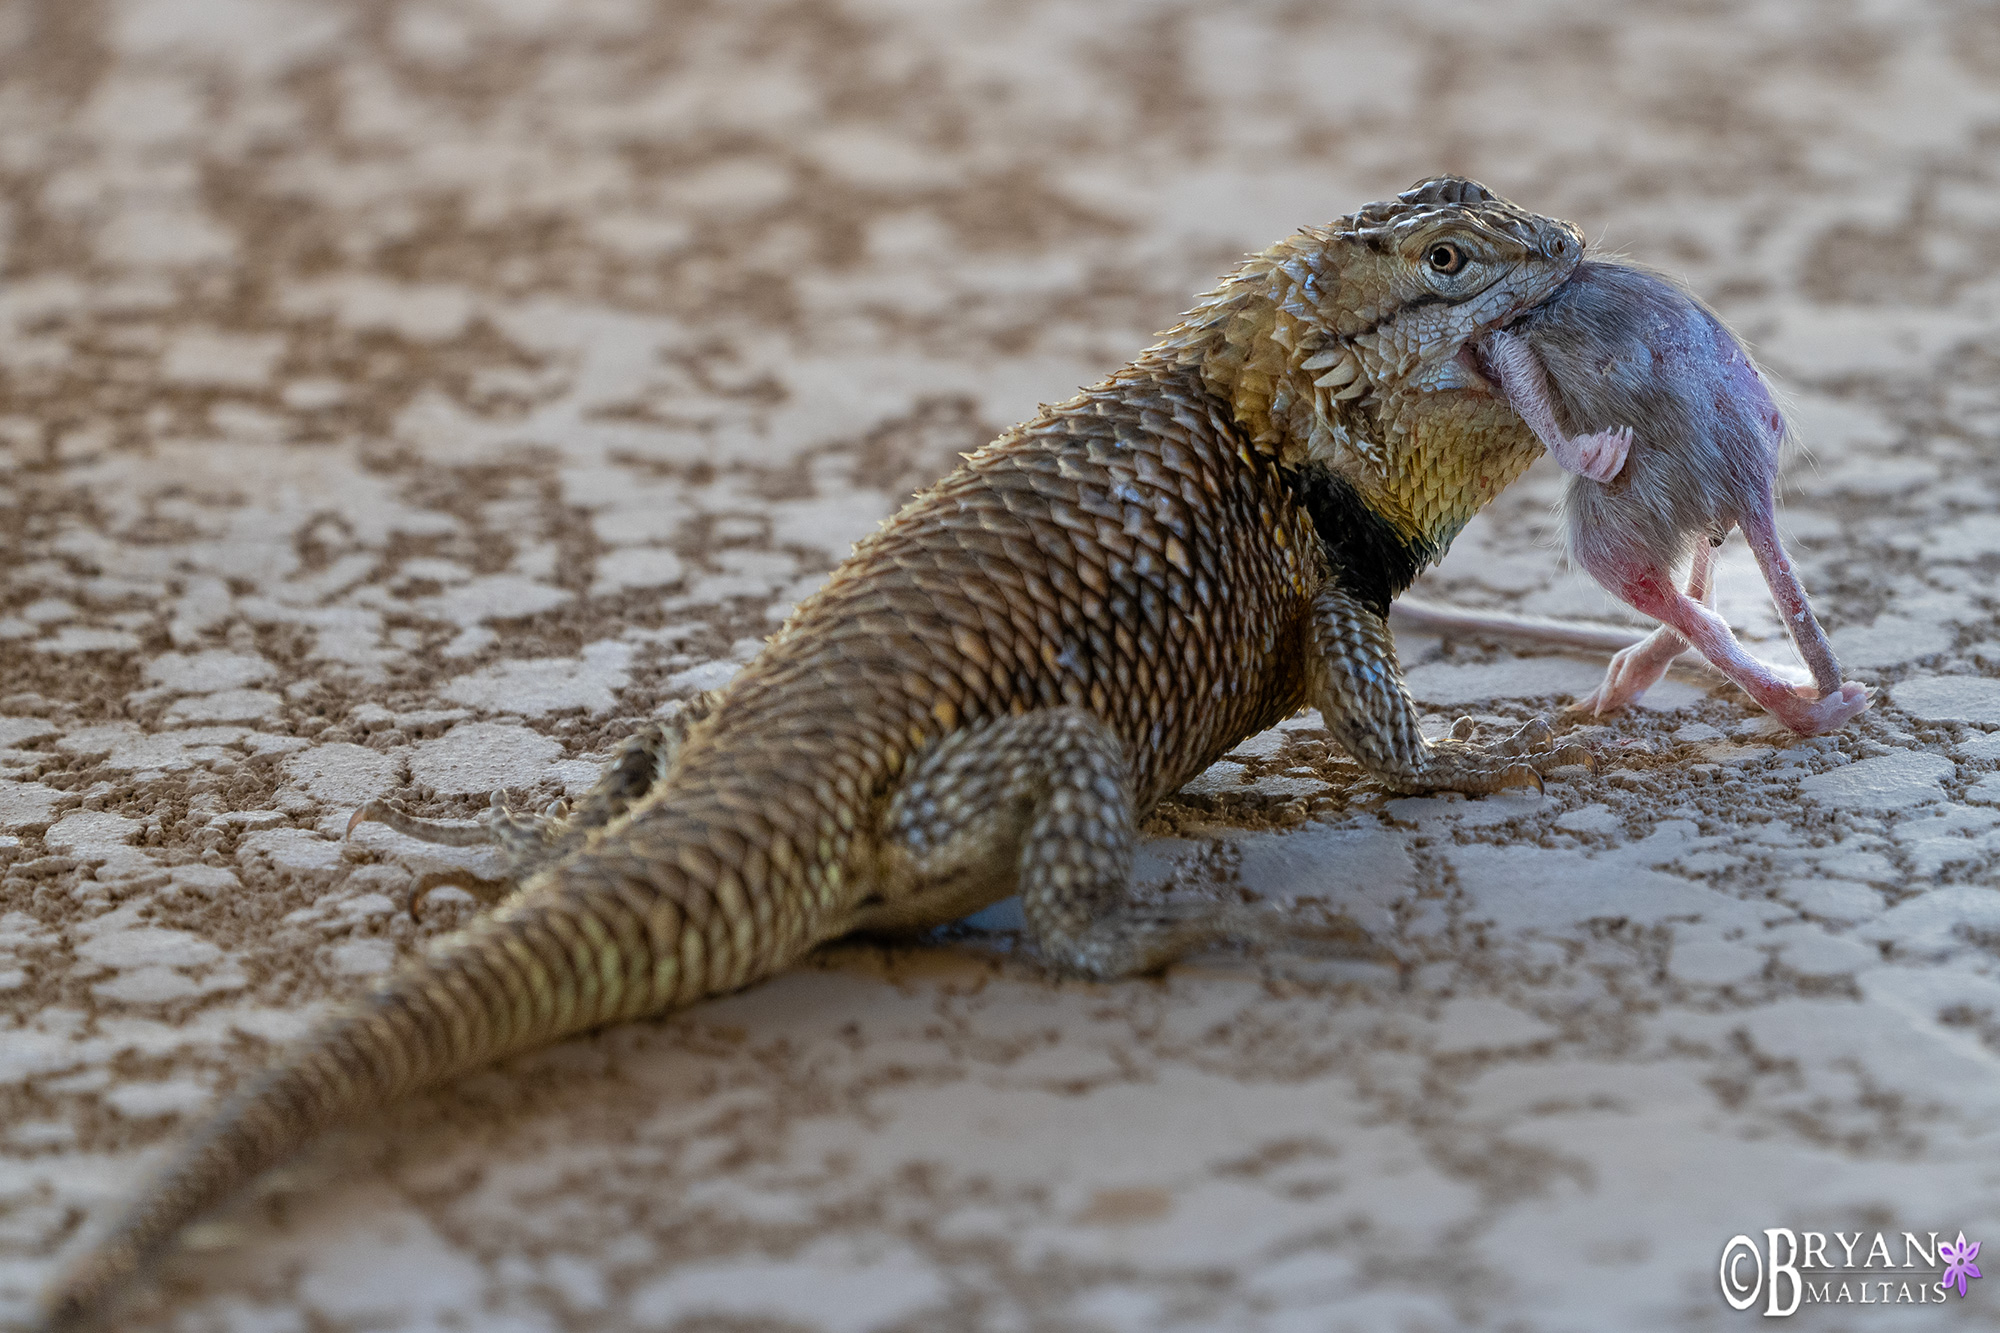 desert spiny lizard eating mouse